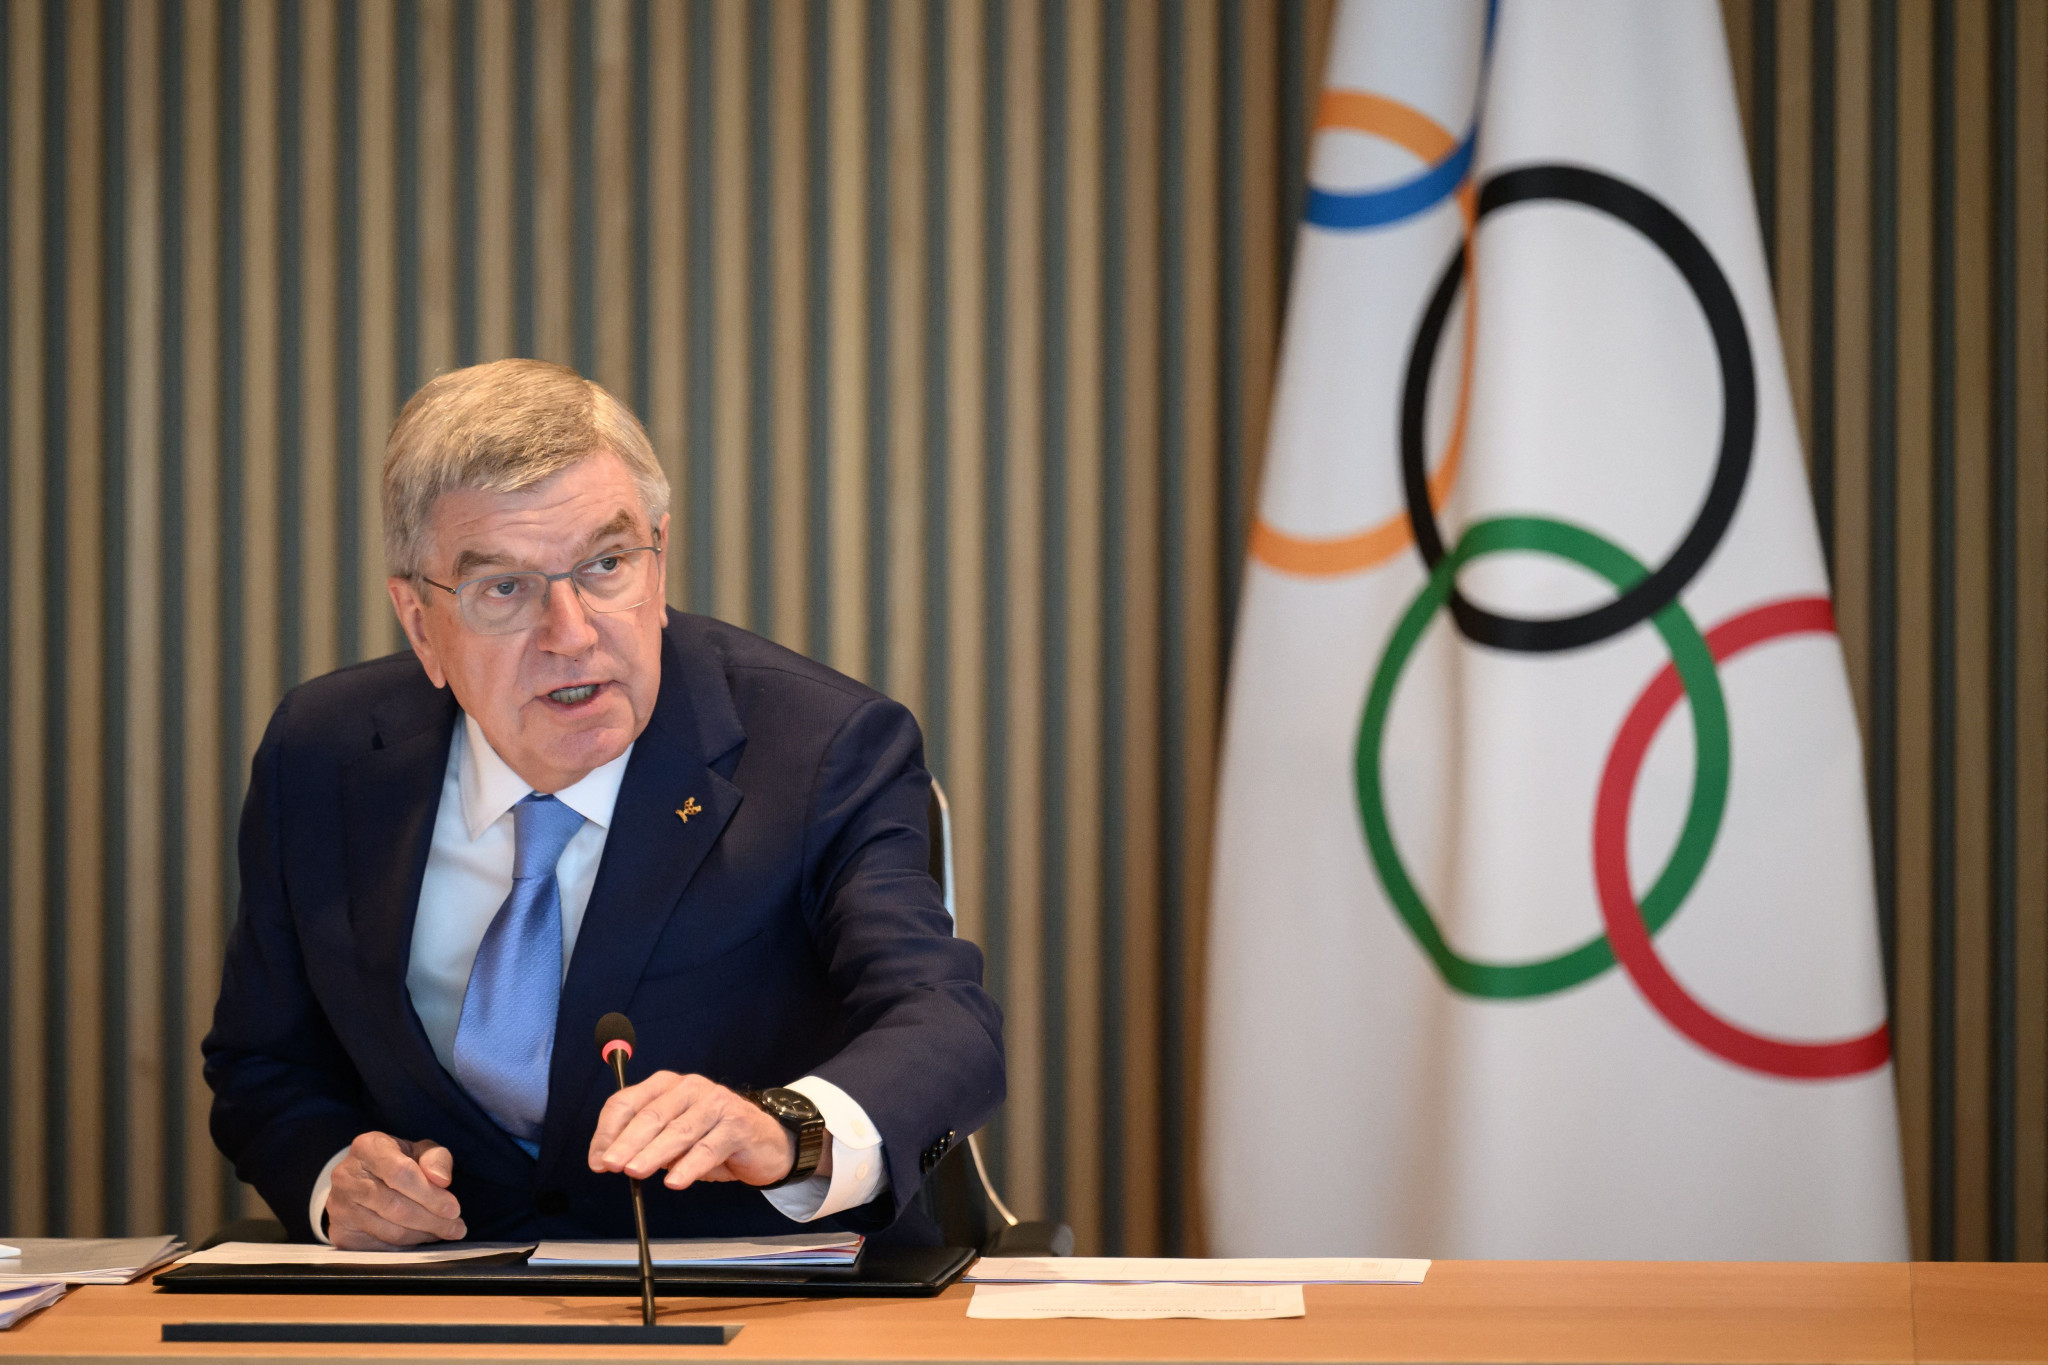 President Thomas Bach said the IOC is 